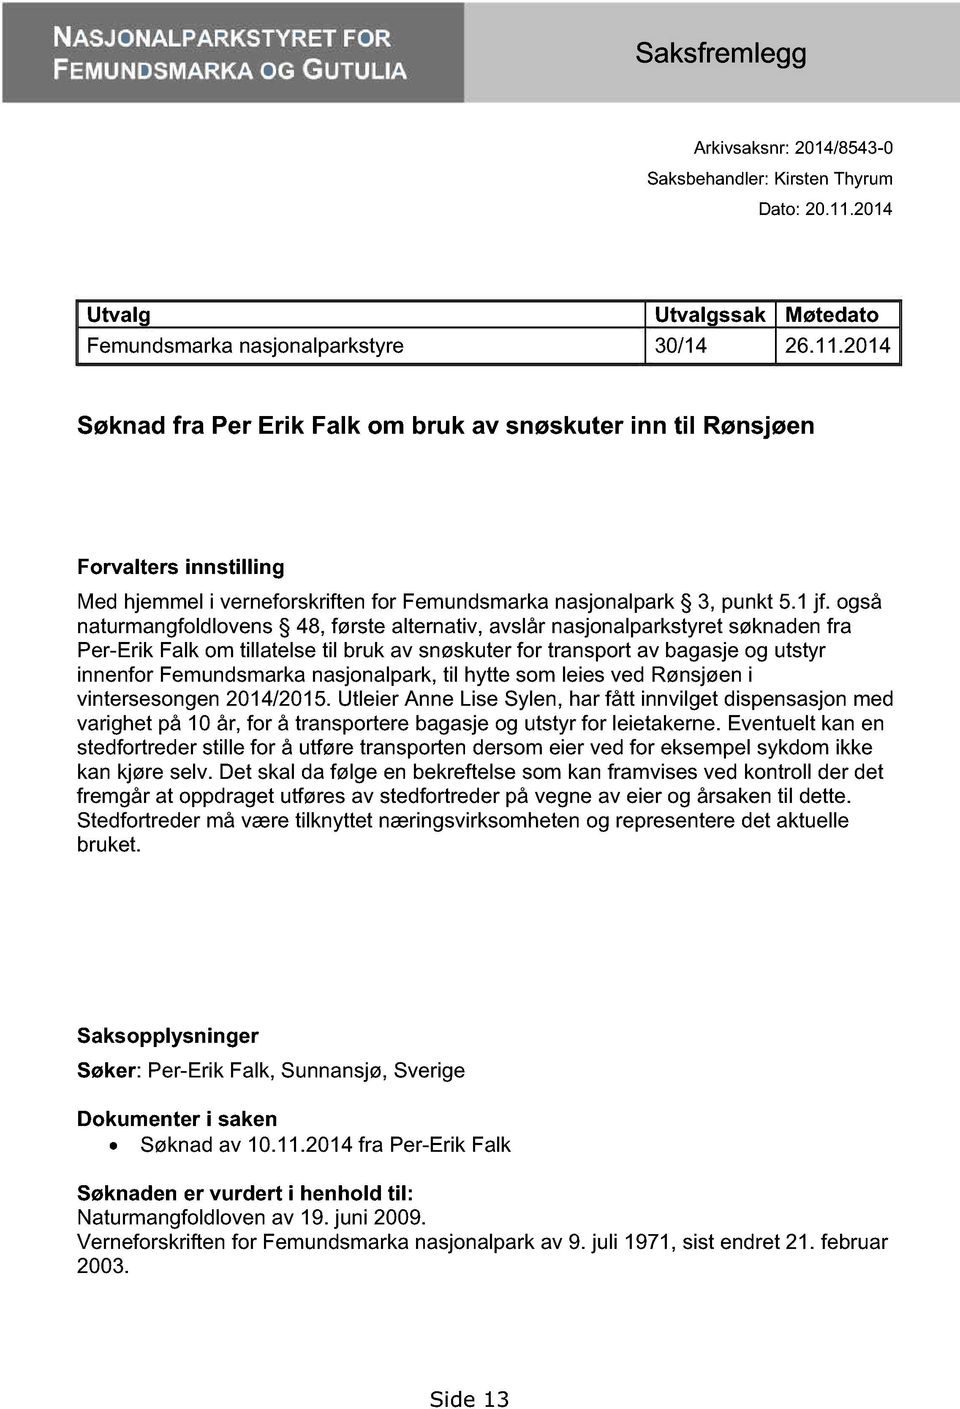 også naturmangfoldlovens 48, første alternativ, avslår nasjonalparkstyret søknaden fra Per-Erik Falk om tillatelse til bruk av snøskuter for transport av bagasje og utstyr innenfor Femundsmarka